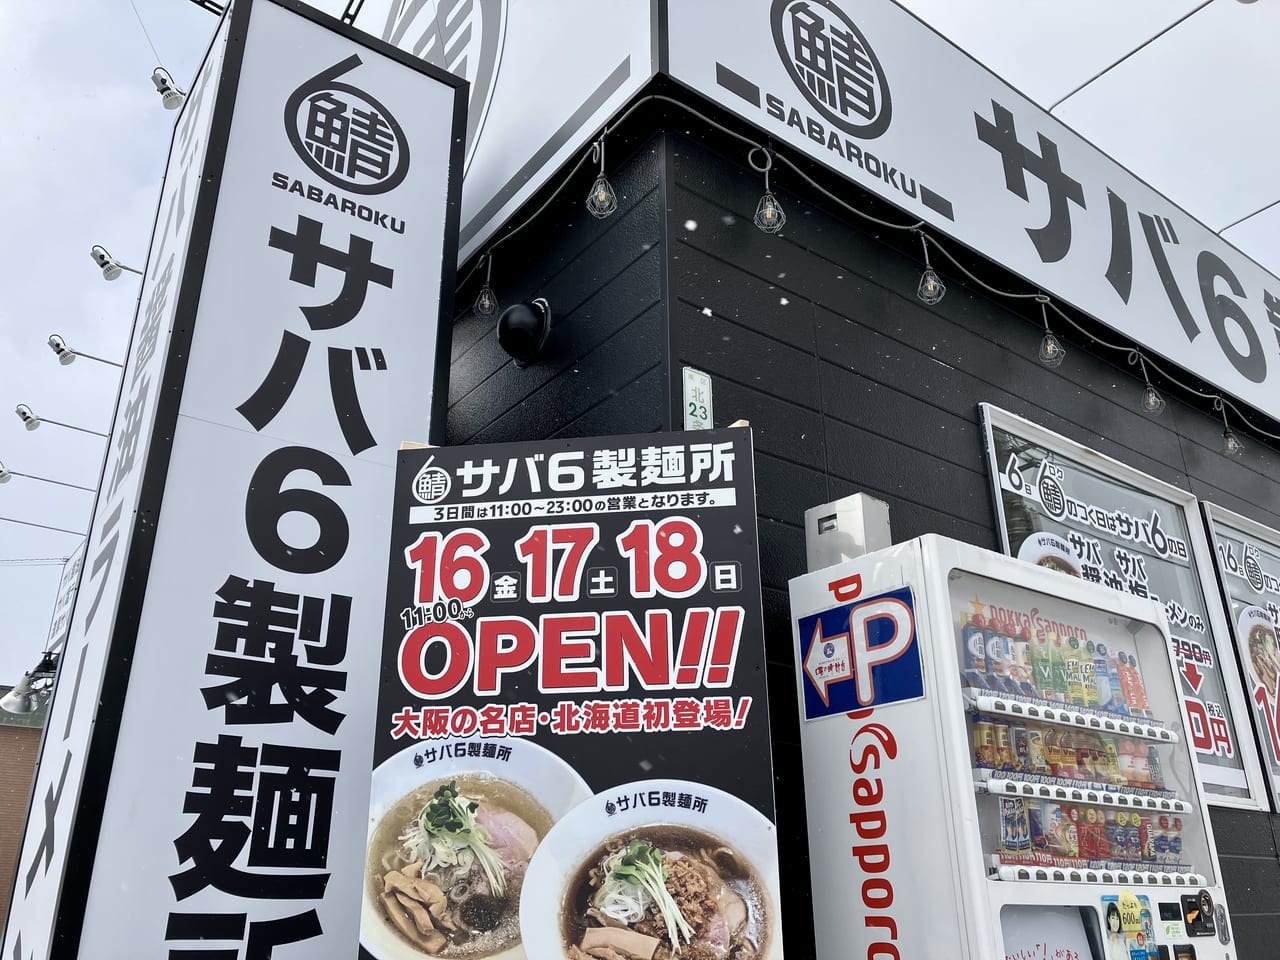 「豚骨」から「サバ」にバトンタッチ。今度のラーメン屋は日本人にとって最も親しみのある「サバ」を使用。「サバ6製麺所」のオープン日がわかりました！